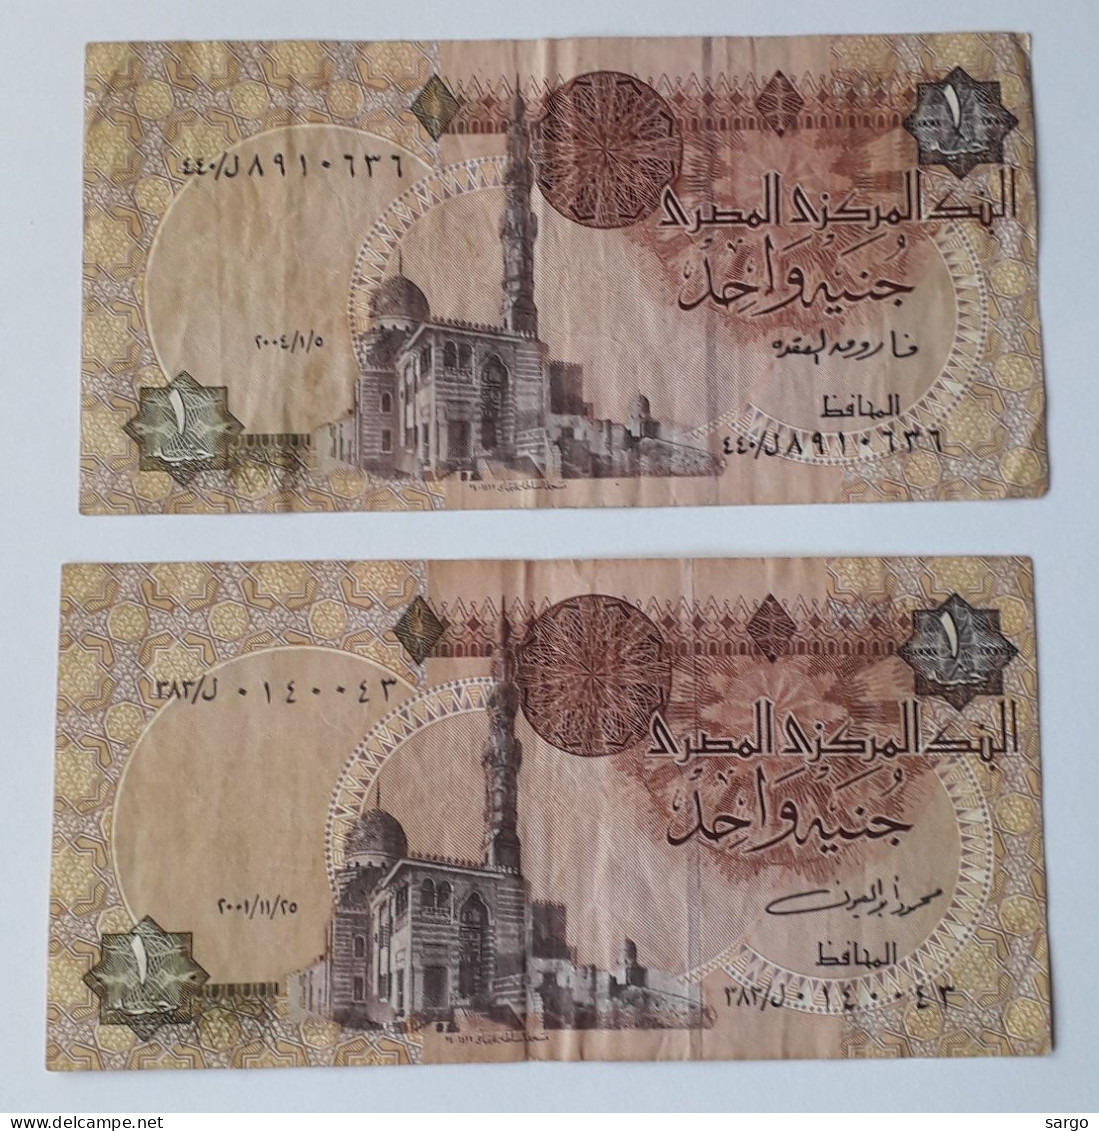 EGYPT - 1 + 1 POUND -  P 50 - 1978-2008 -  CIRC - 2 PCS - BANKNOTES - PAPER MONEY - CARTAMONETA - - Aegypten